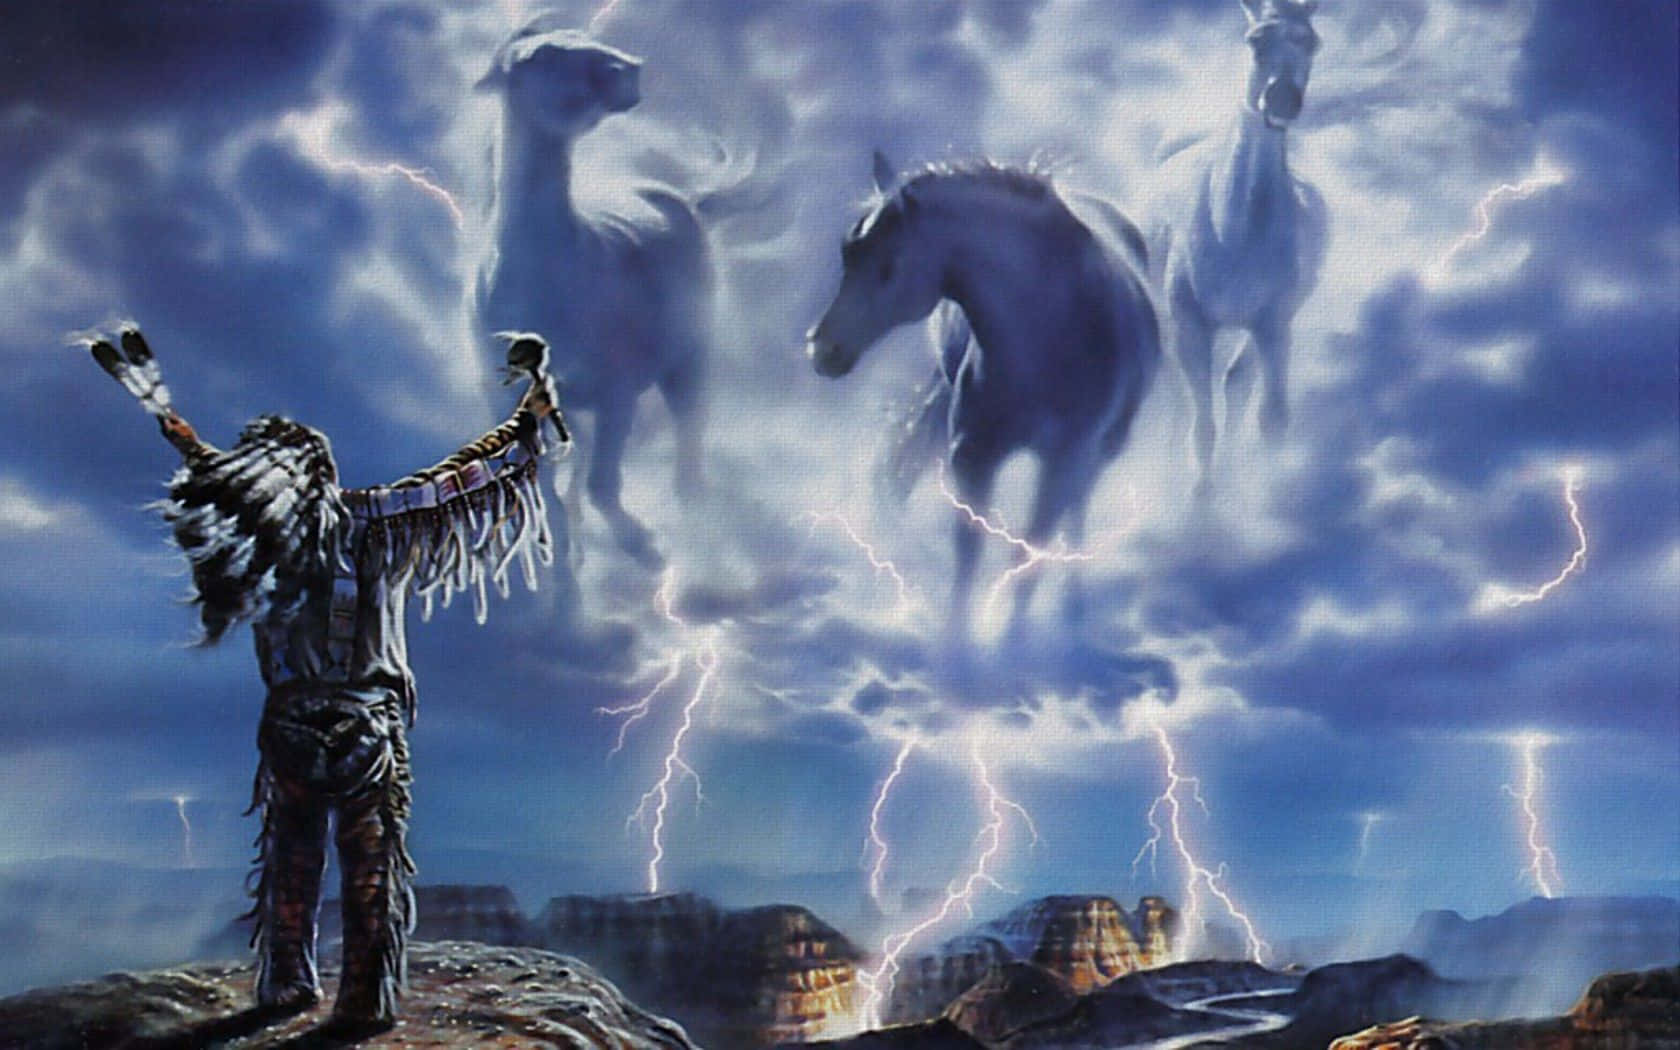 Et maleri af en indfødt amerikaner mand med heste og lynet i himlen Wallpaper